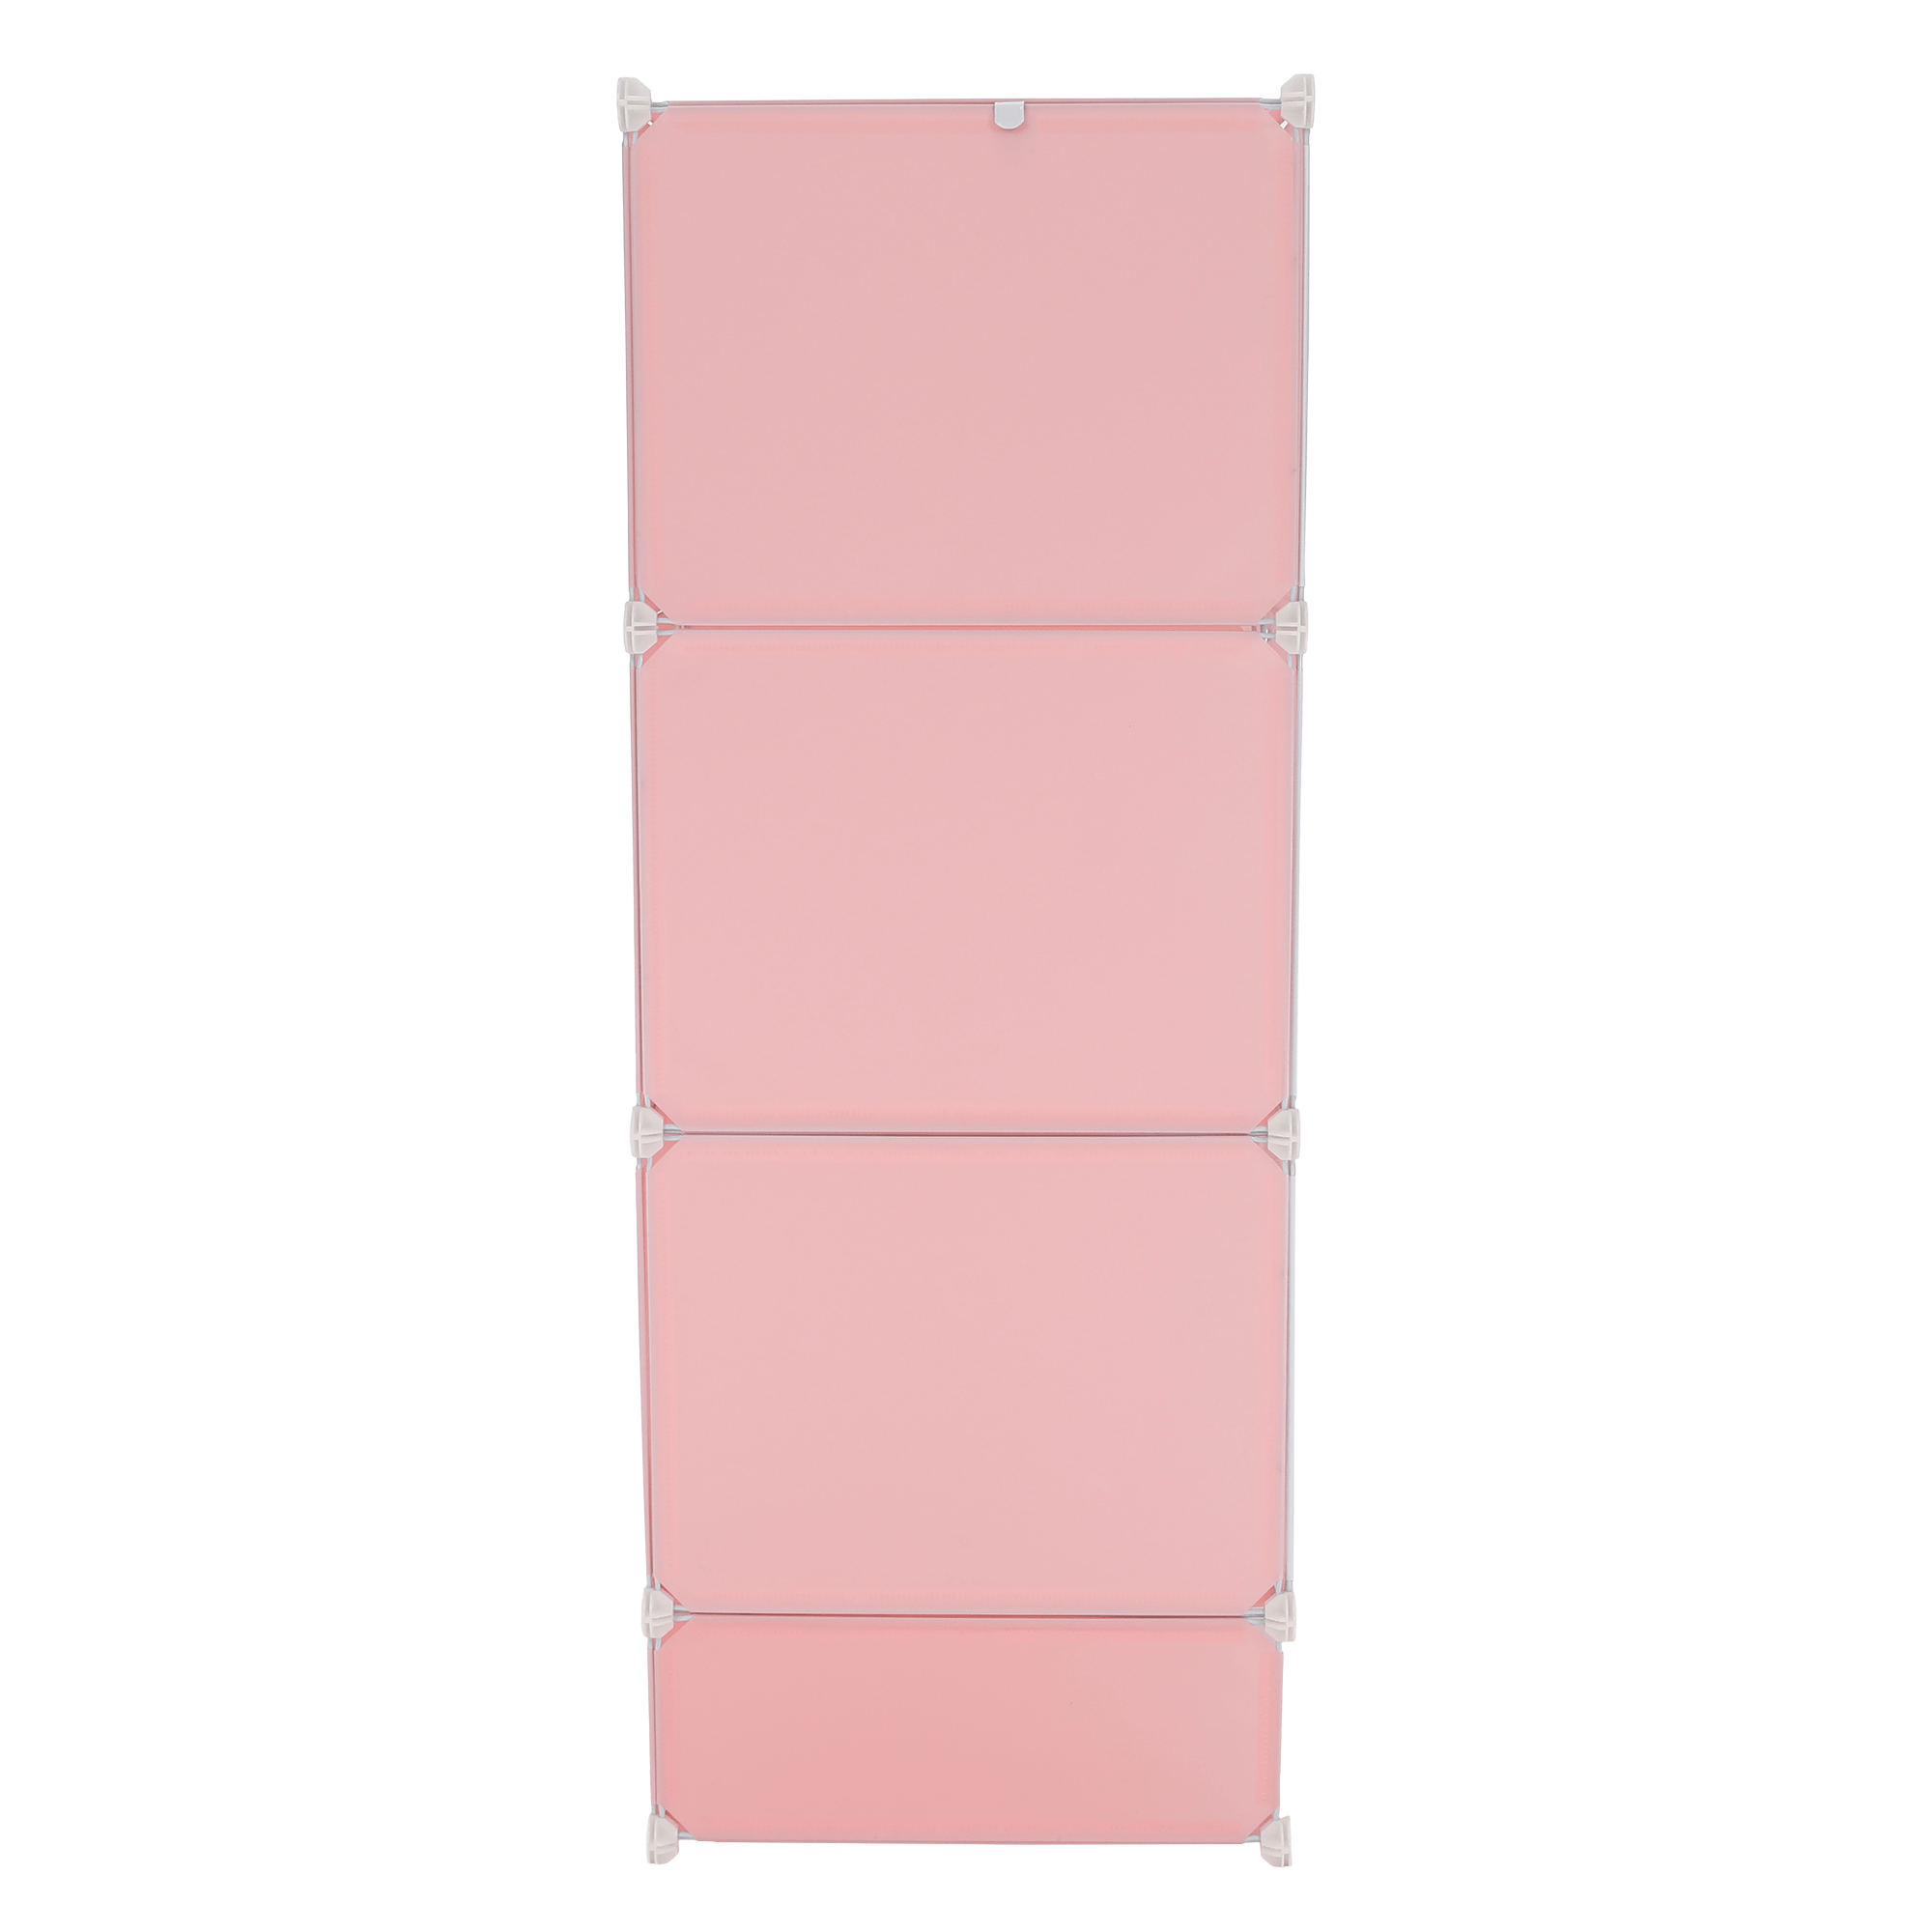 Modulární skříň pro děti, růžová / dětský vzor, NORME